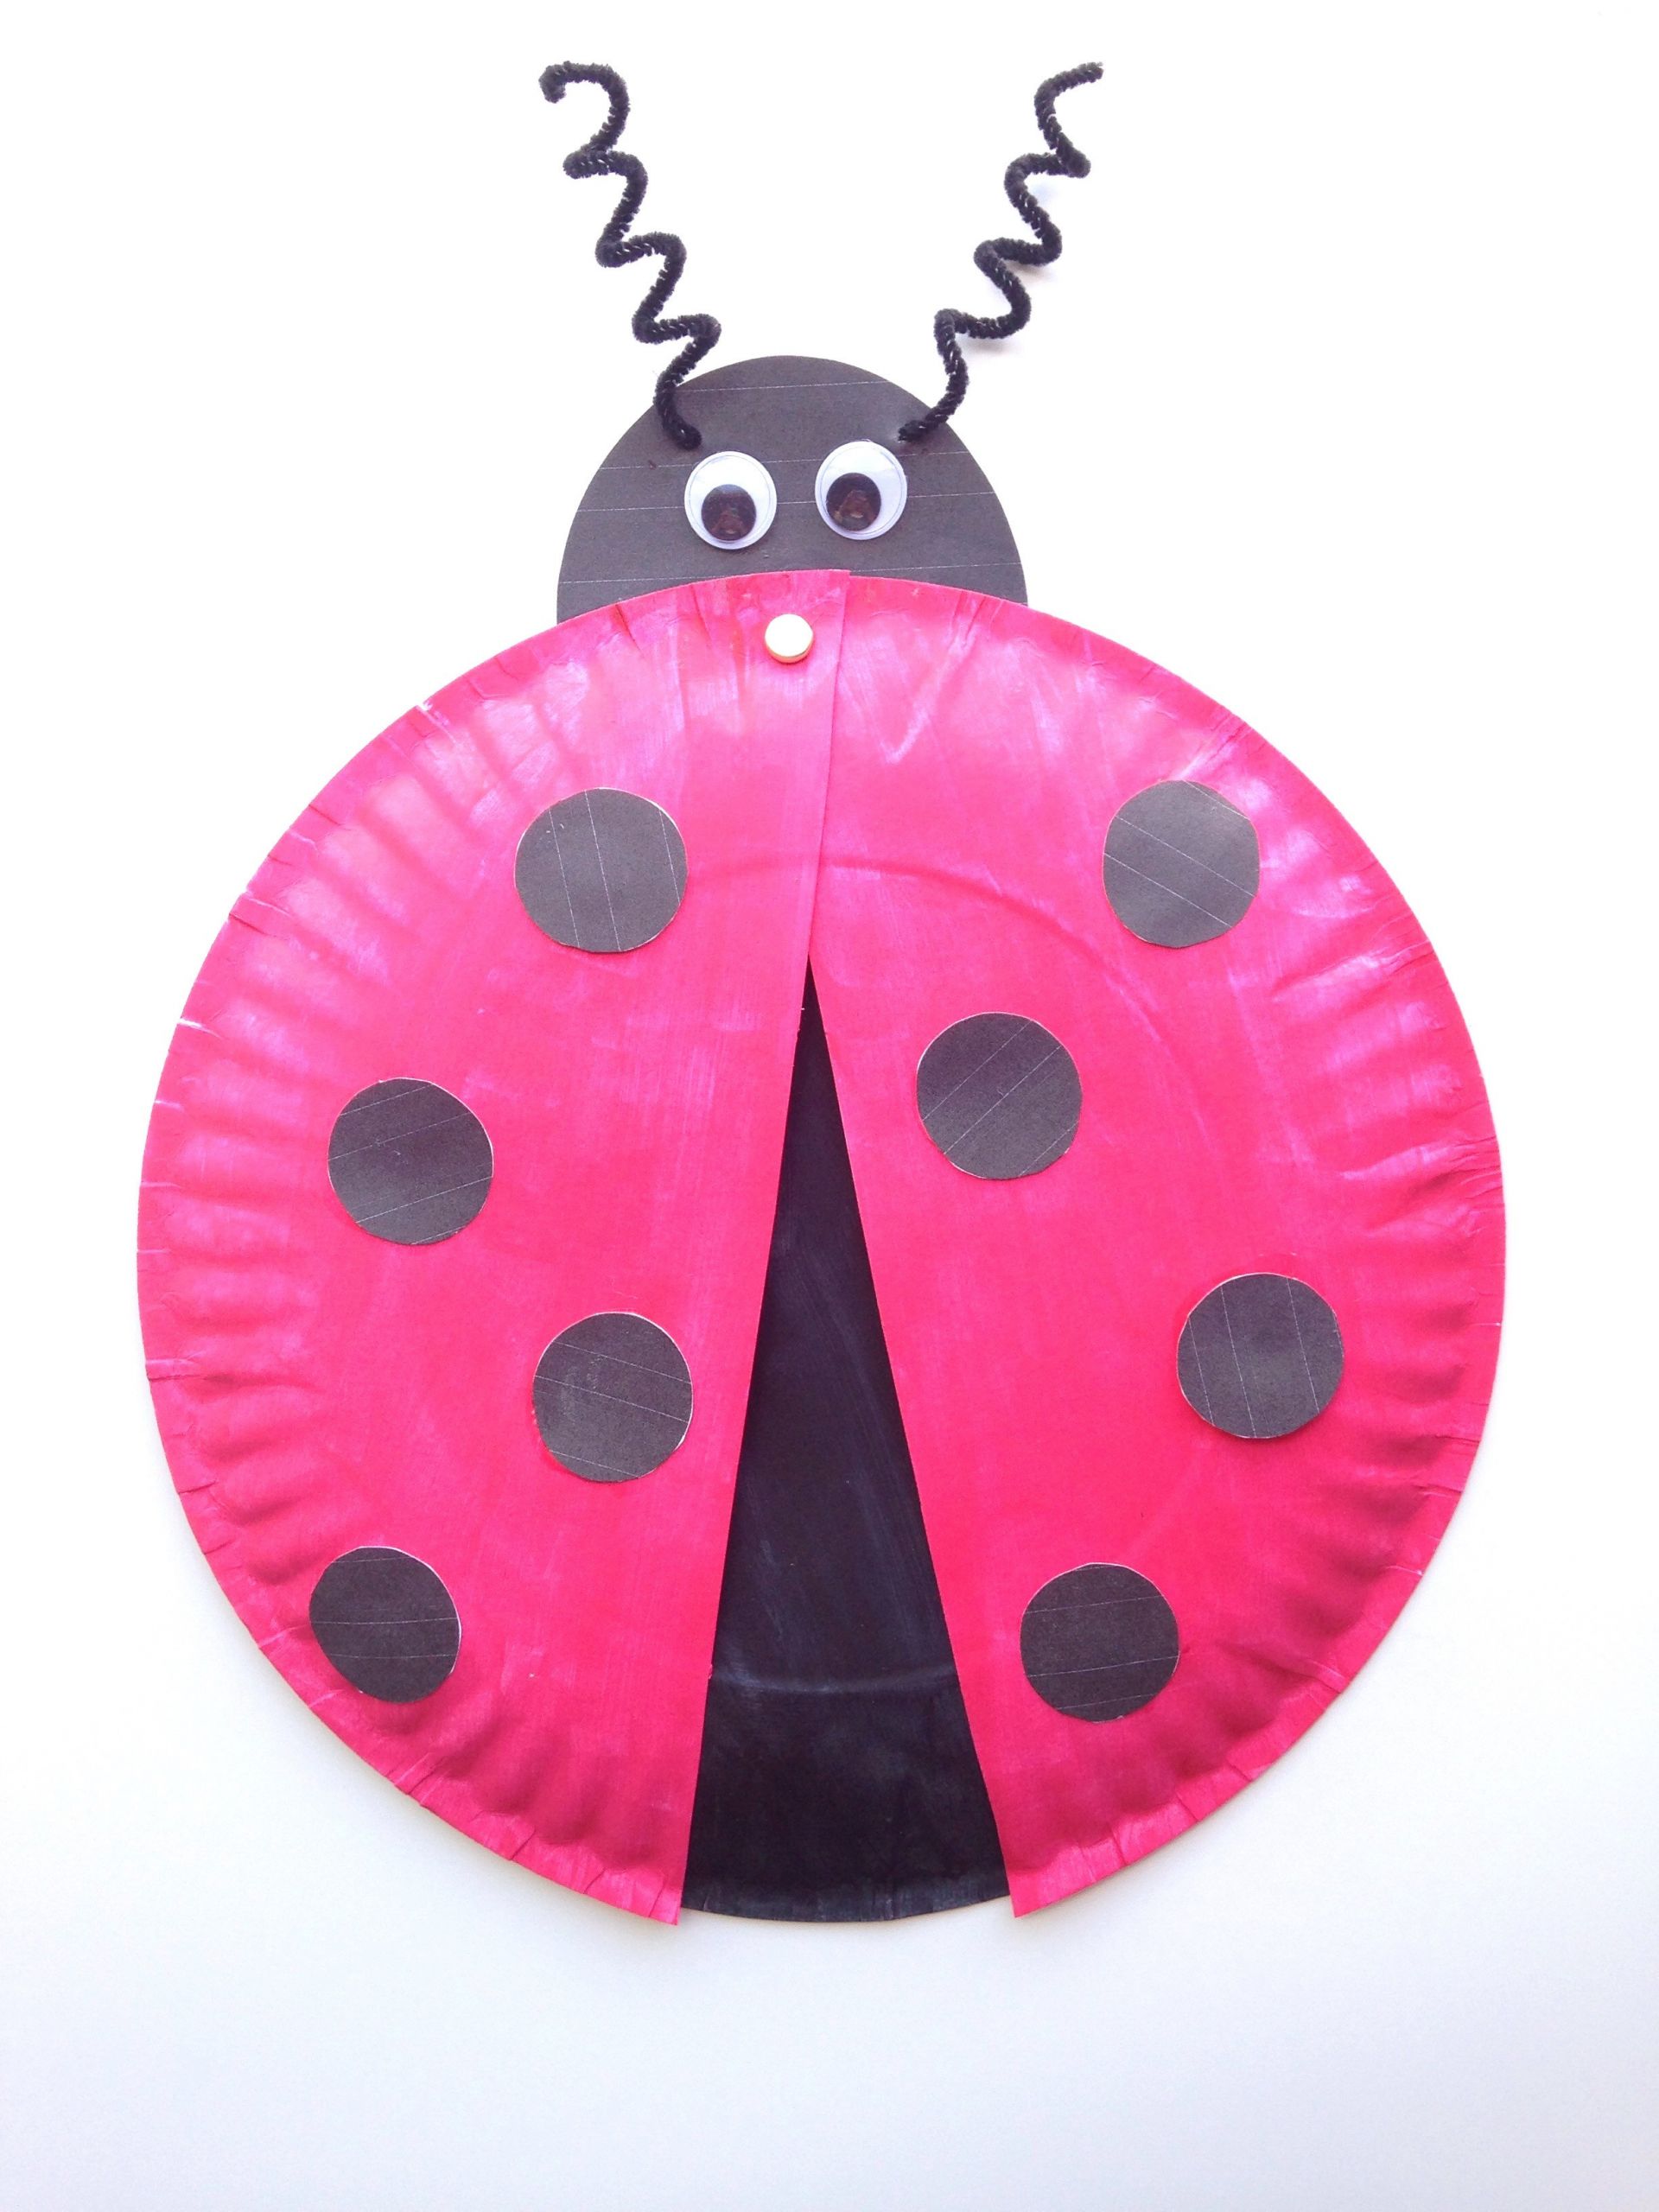 Printable Craft For Kids
 Ladybug Paper Plate Craft for Kids Free Printable